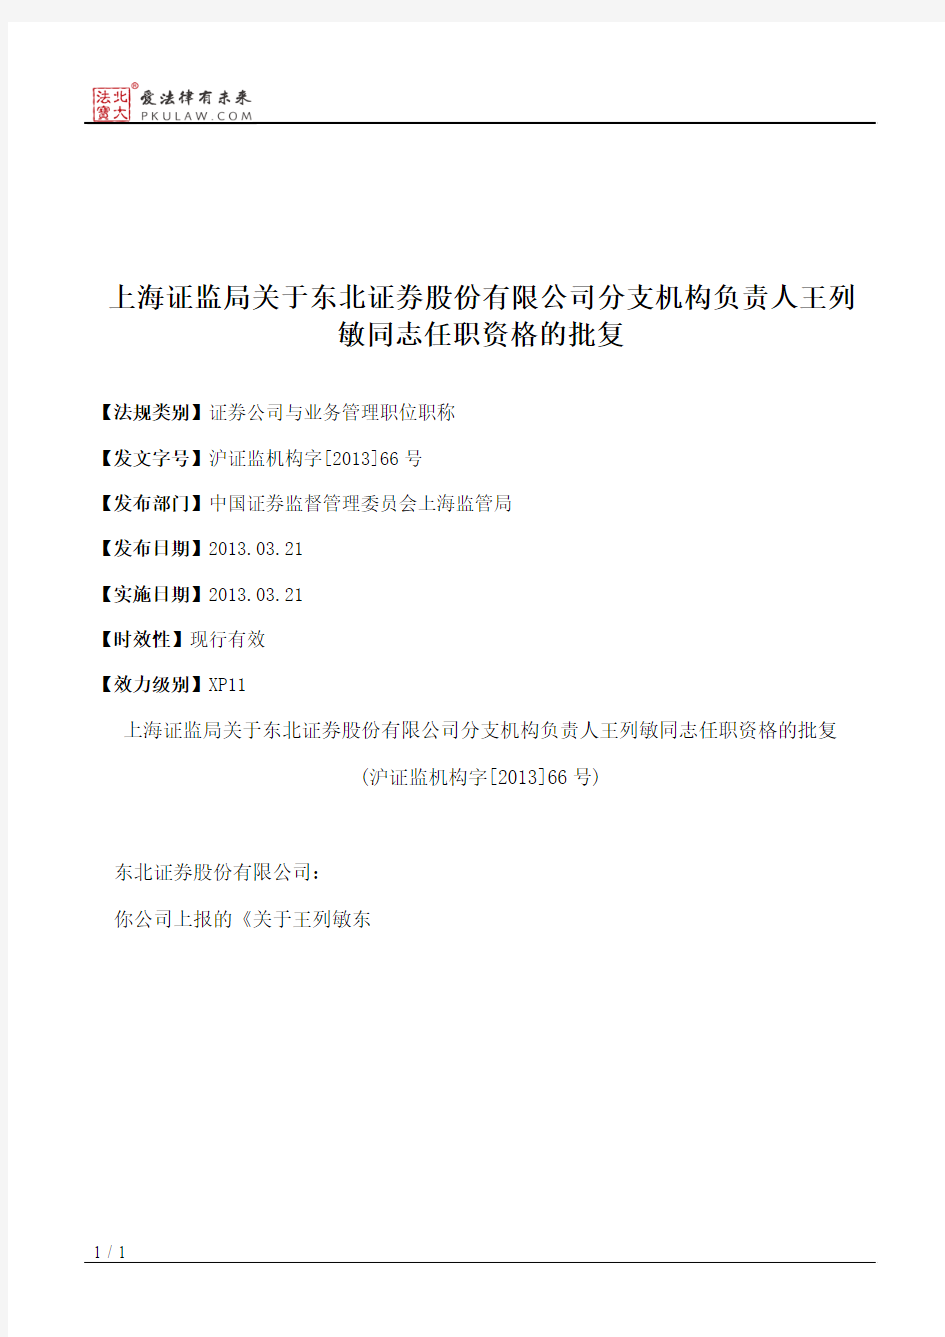 上海证监局关于东北证券股份有限公司分支机构负责人王列敏同志任